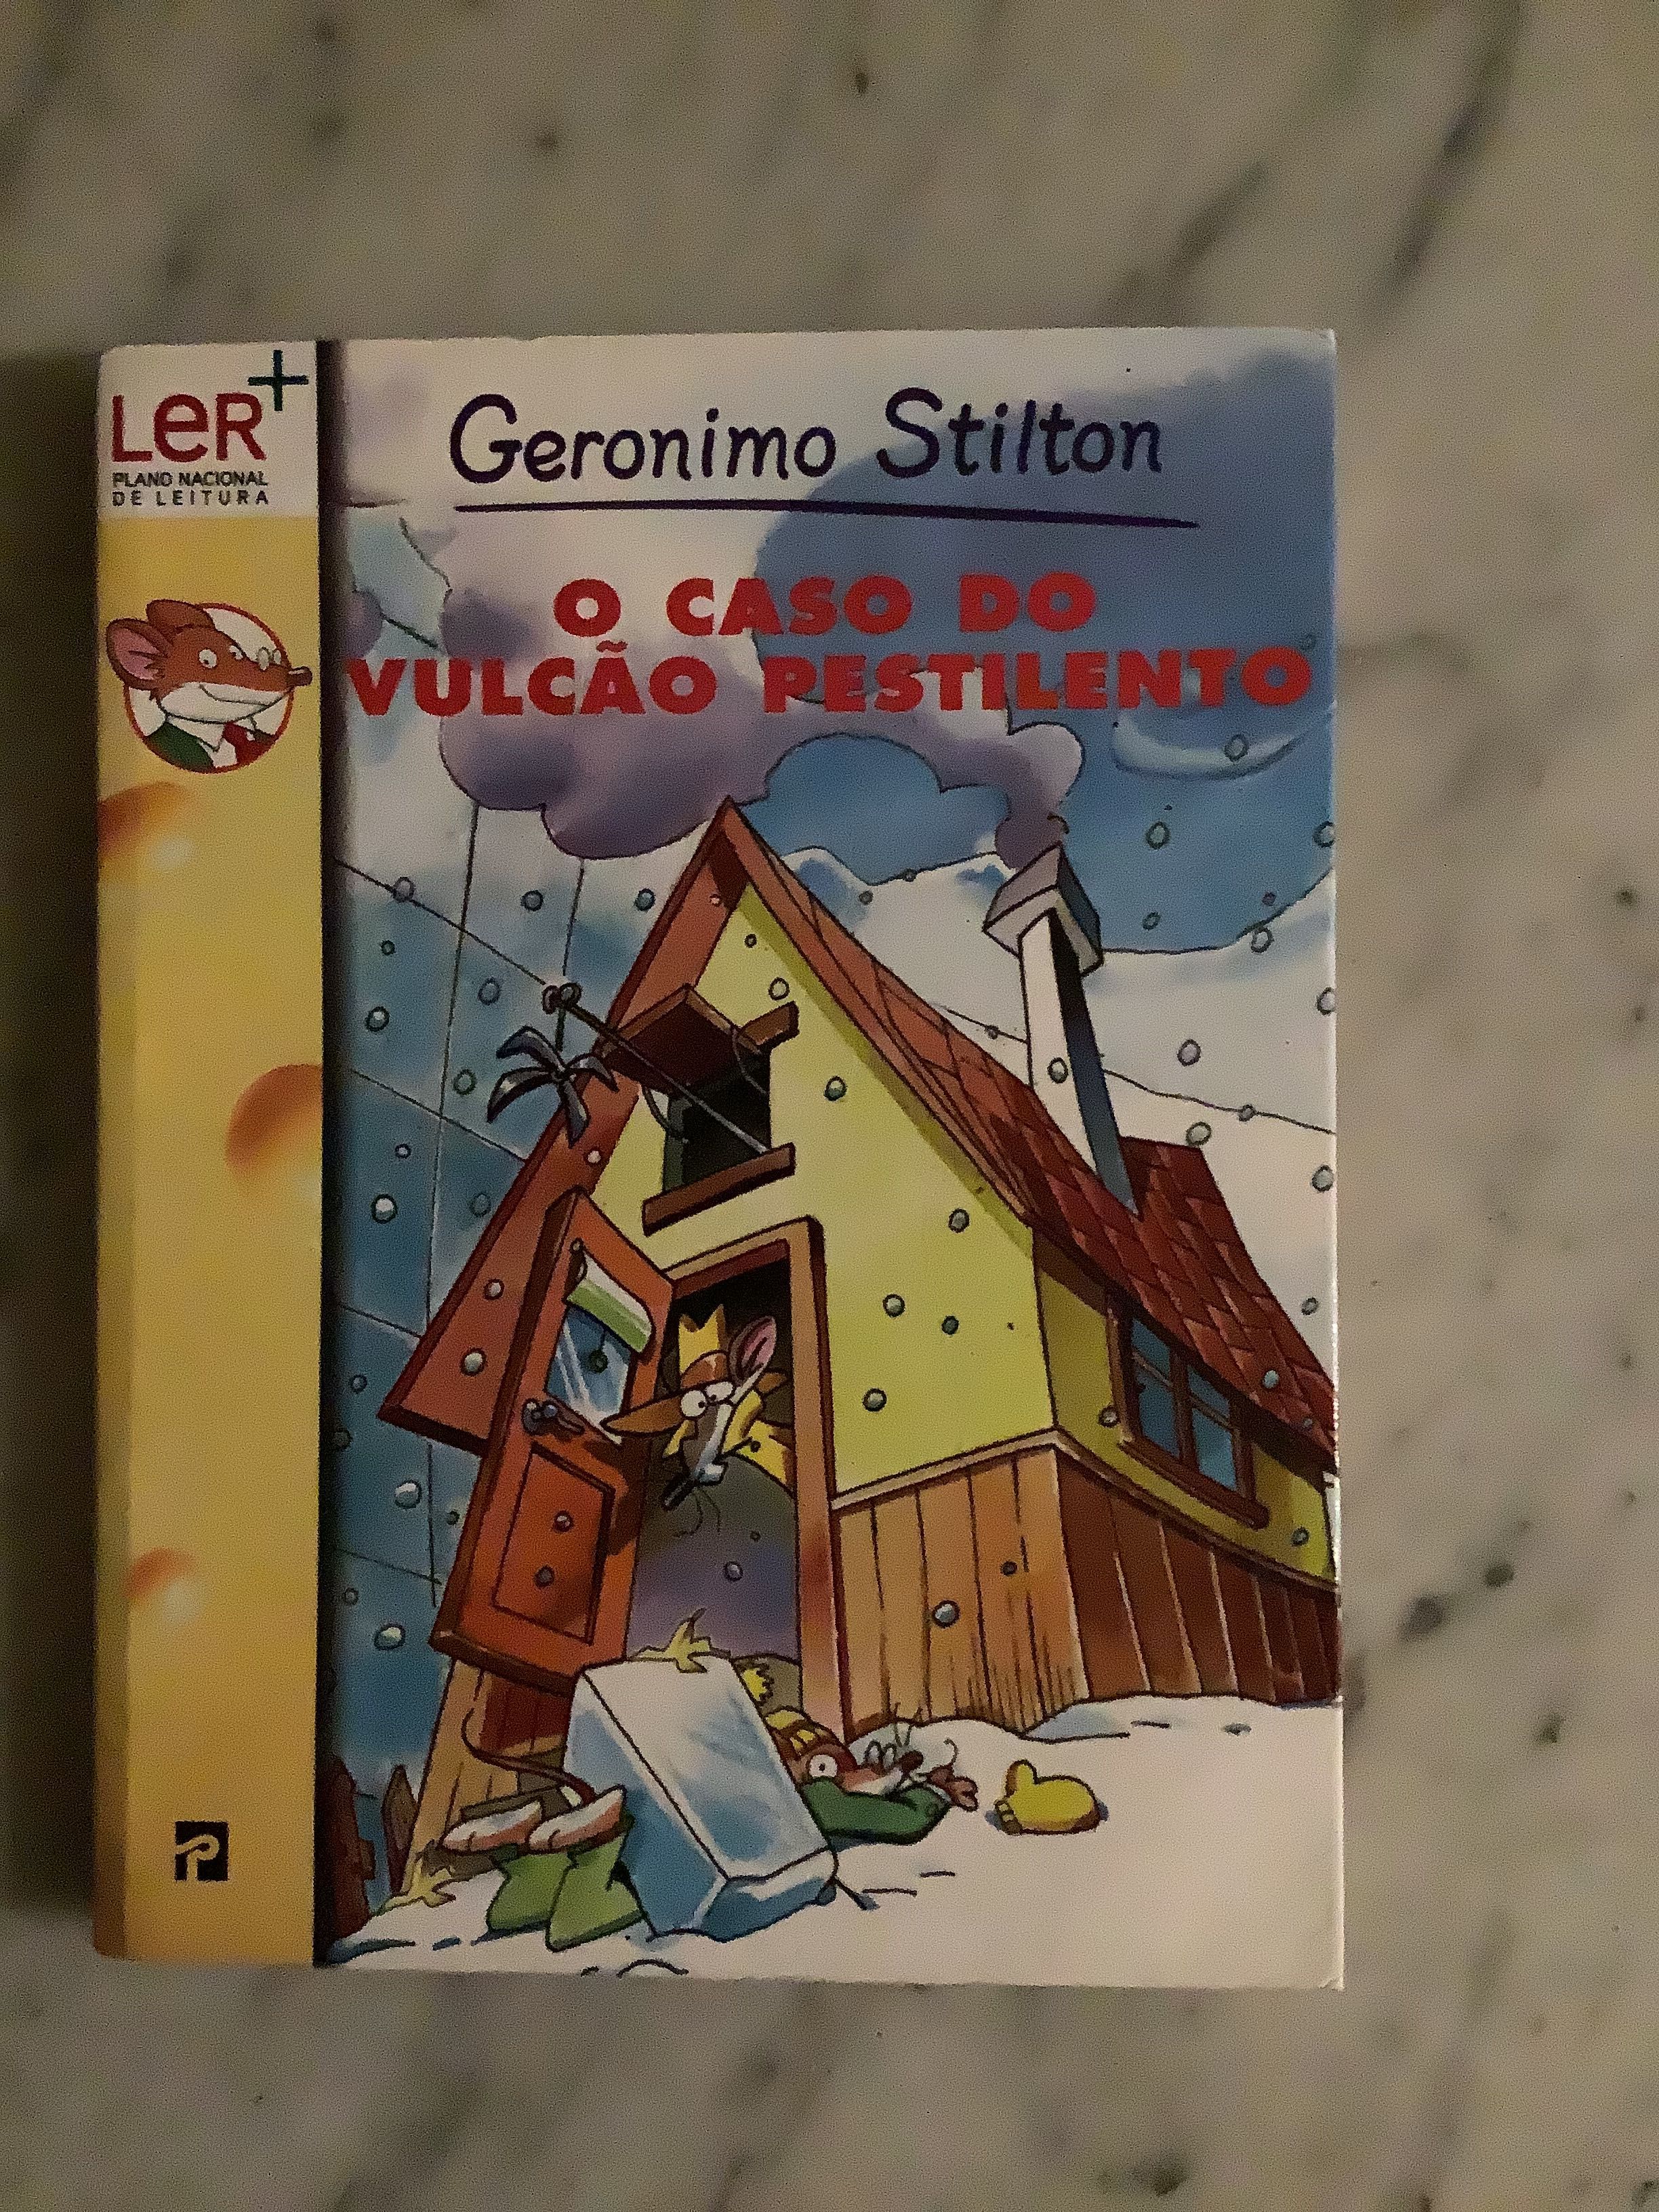 Geronimo Stilton - O caso do vulcão Pestilento.